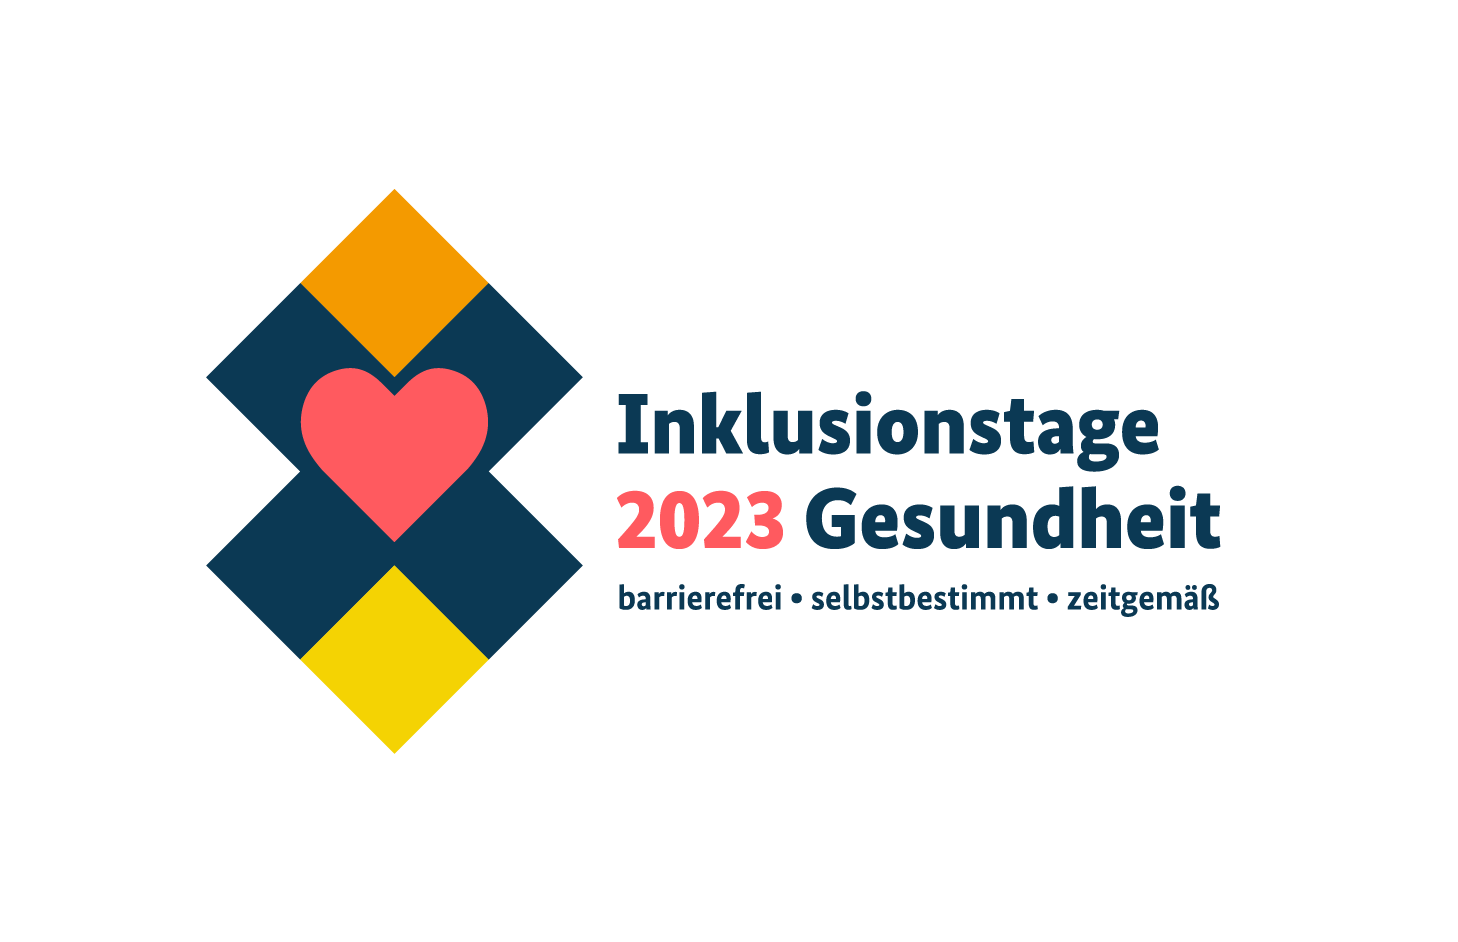 Logo mit Quadraten und einem roten Herz und dem Text: Inklusionstage 2023 Gesundheit - barrierefrei, selbstbestimmt, zeitgemäß